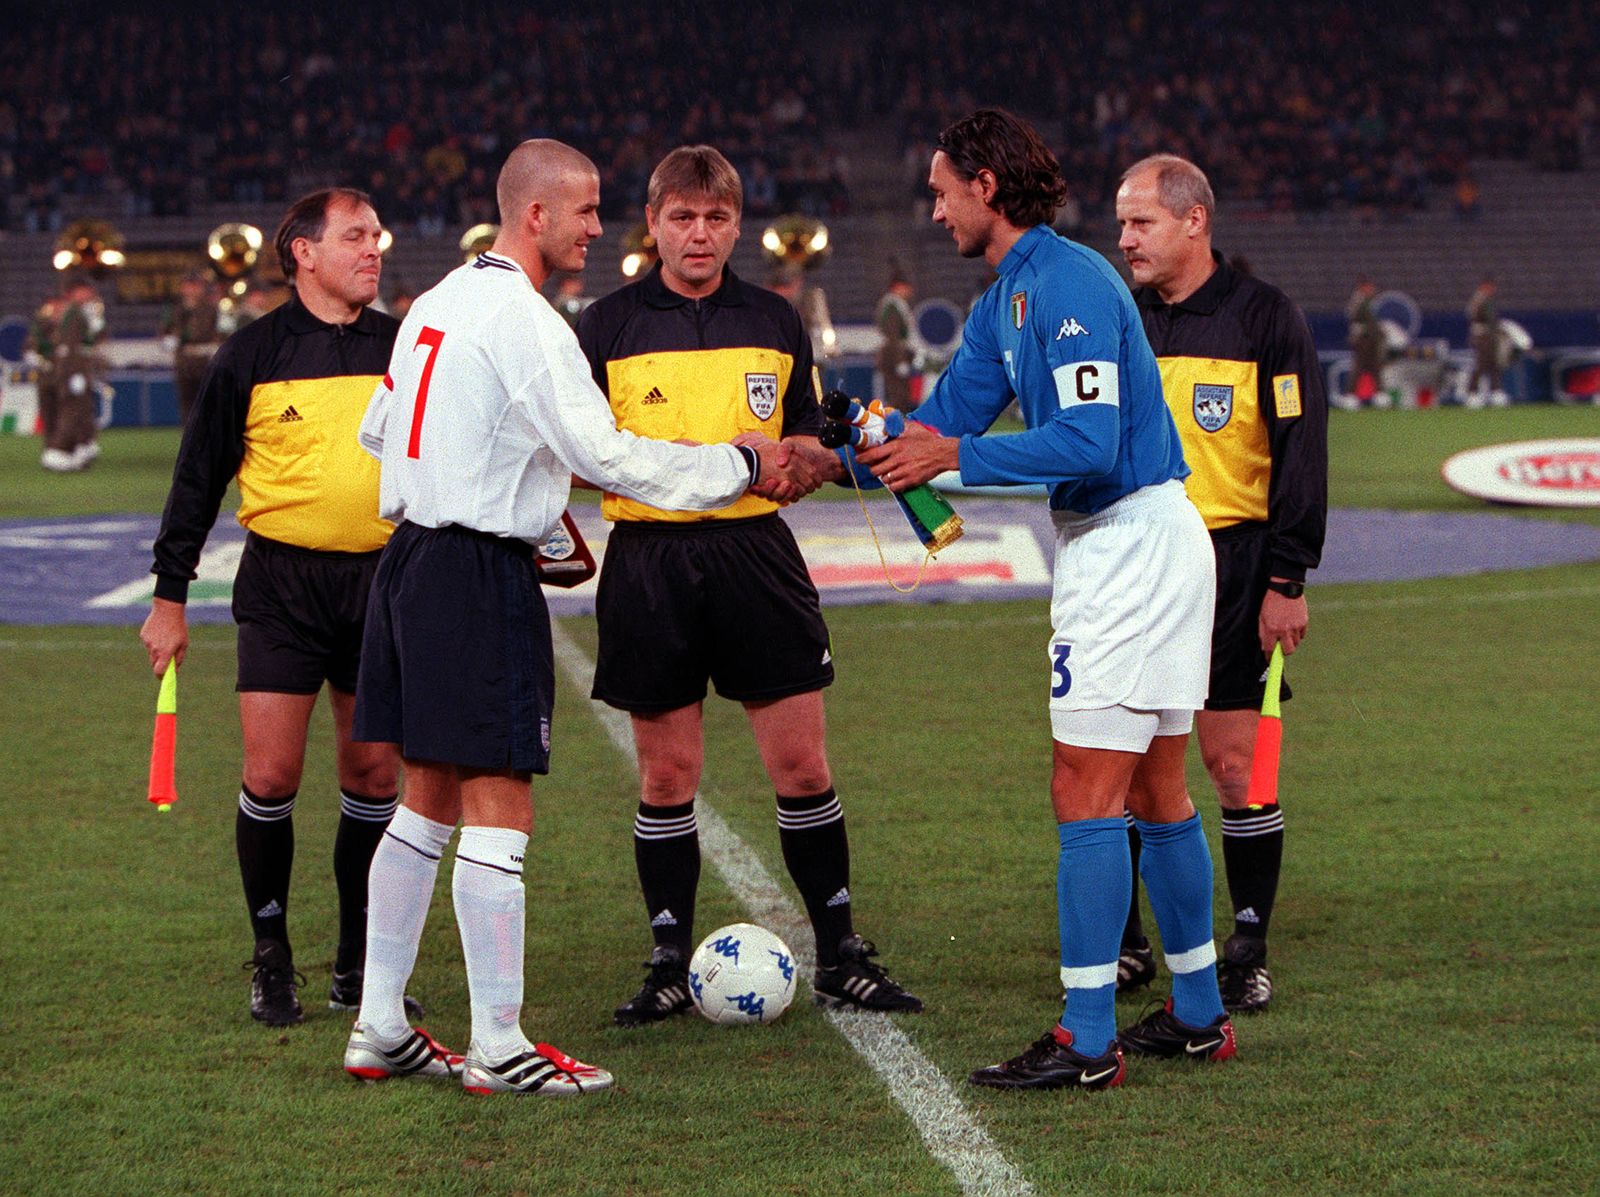 قائد إيطاليا باولو مالديني يصافح قائد إنجلترا ديفيد بيكهام في مباراة الفريقين عام 2000 - TWITTER/@BBCMOTD